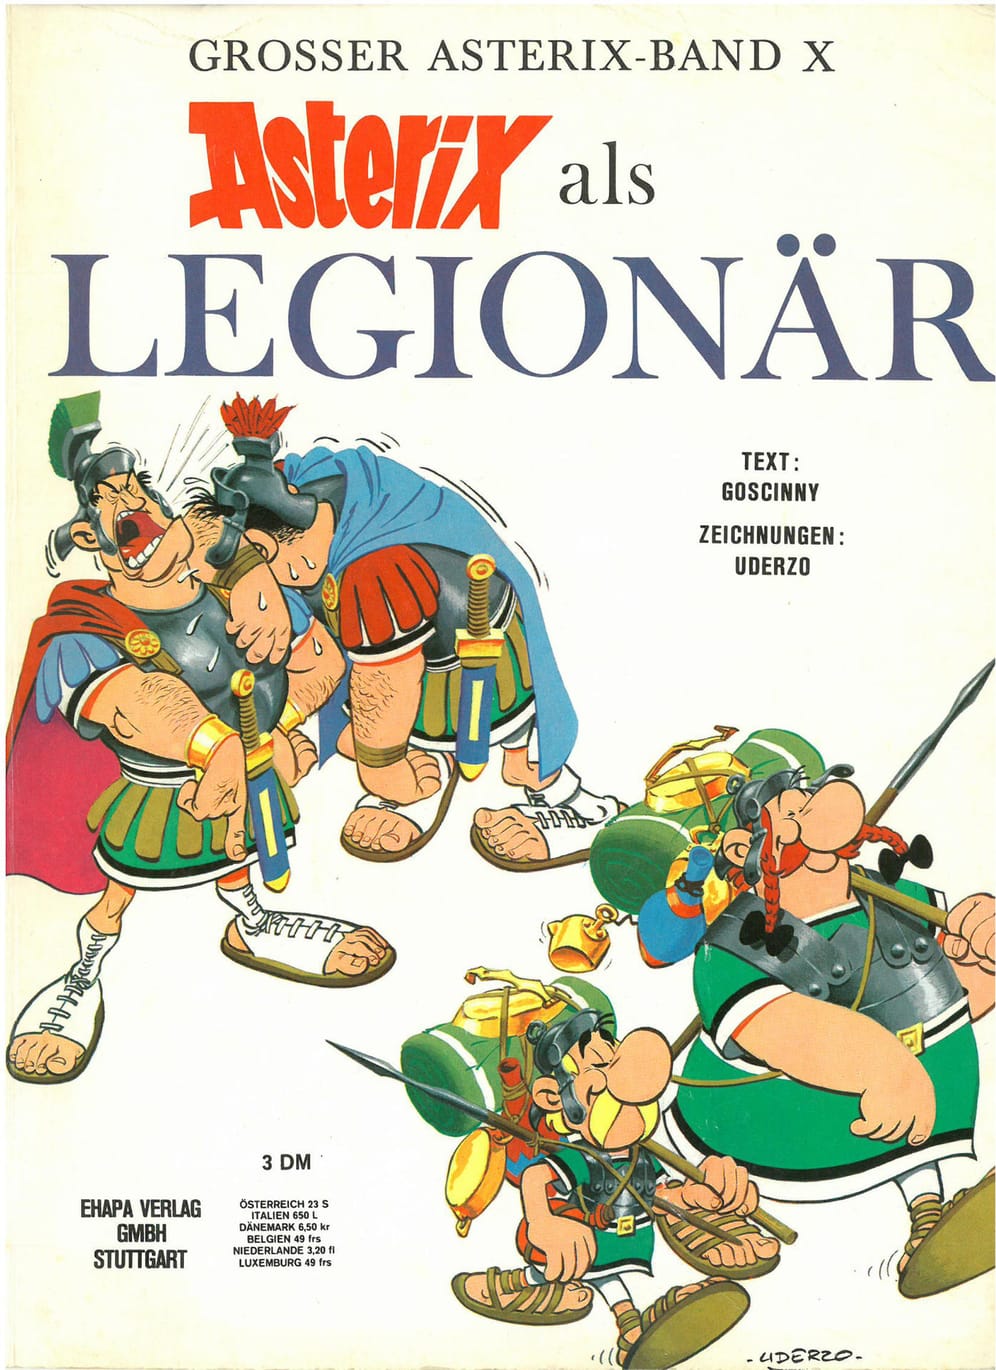 Die zehnte Ausgabe: Asterix als Legionär. Obelix verliebt sich in die junge, blonde Falbala. Diese hat aber einen Verlobten, der ins römische Heer gezwungen wurde. Asterix und Obelix beschließen, ihn zu befreien. Sie lassen sich zu Legionären ausbilden. Cäsars Heer siegt und zum Dank dürfen sie den Verlobten mitnehmen. Falbala bedankt sich bei Asterix und Obelix mit einem Kuss.